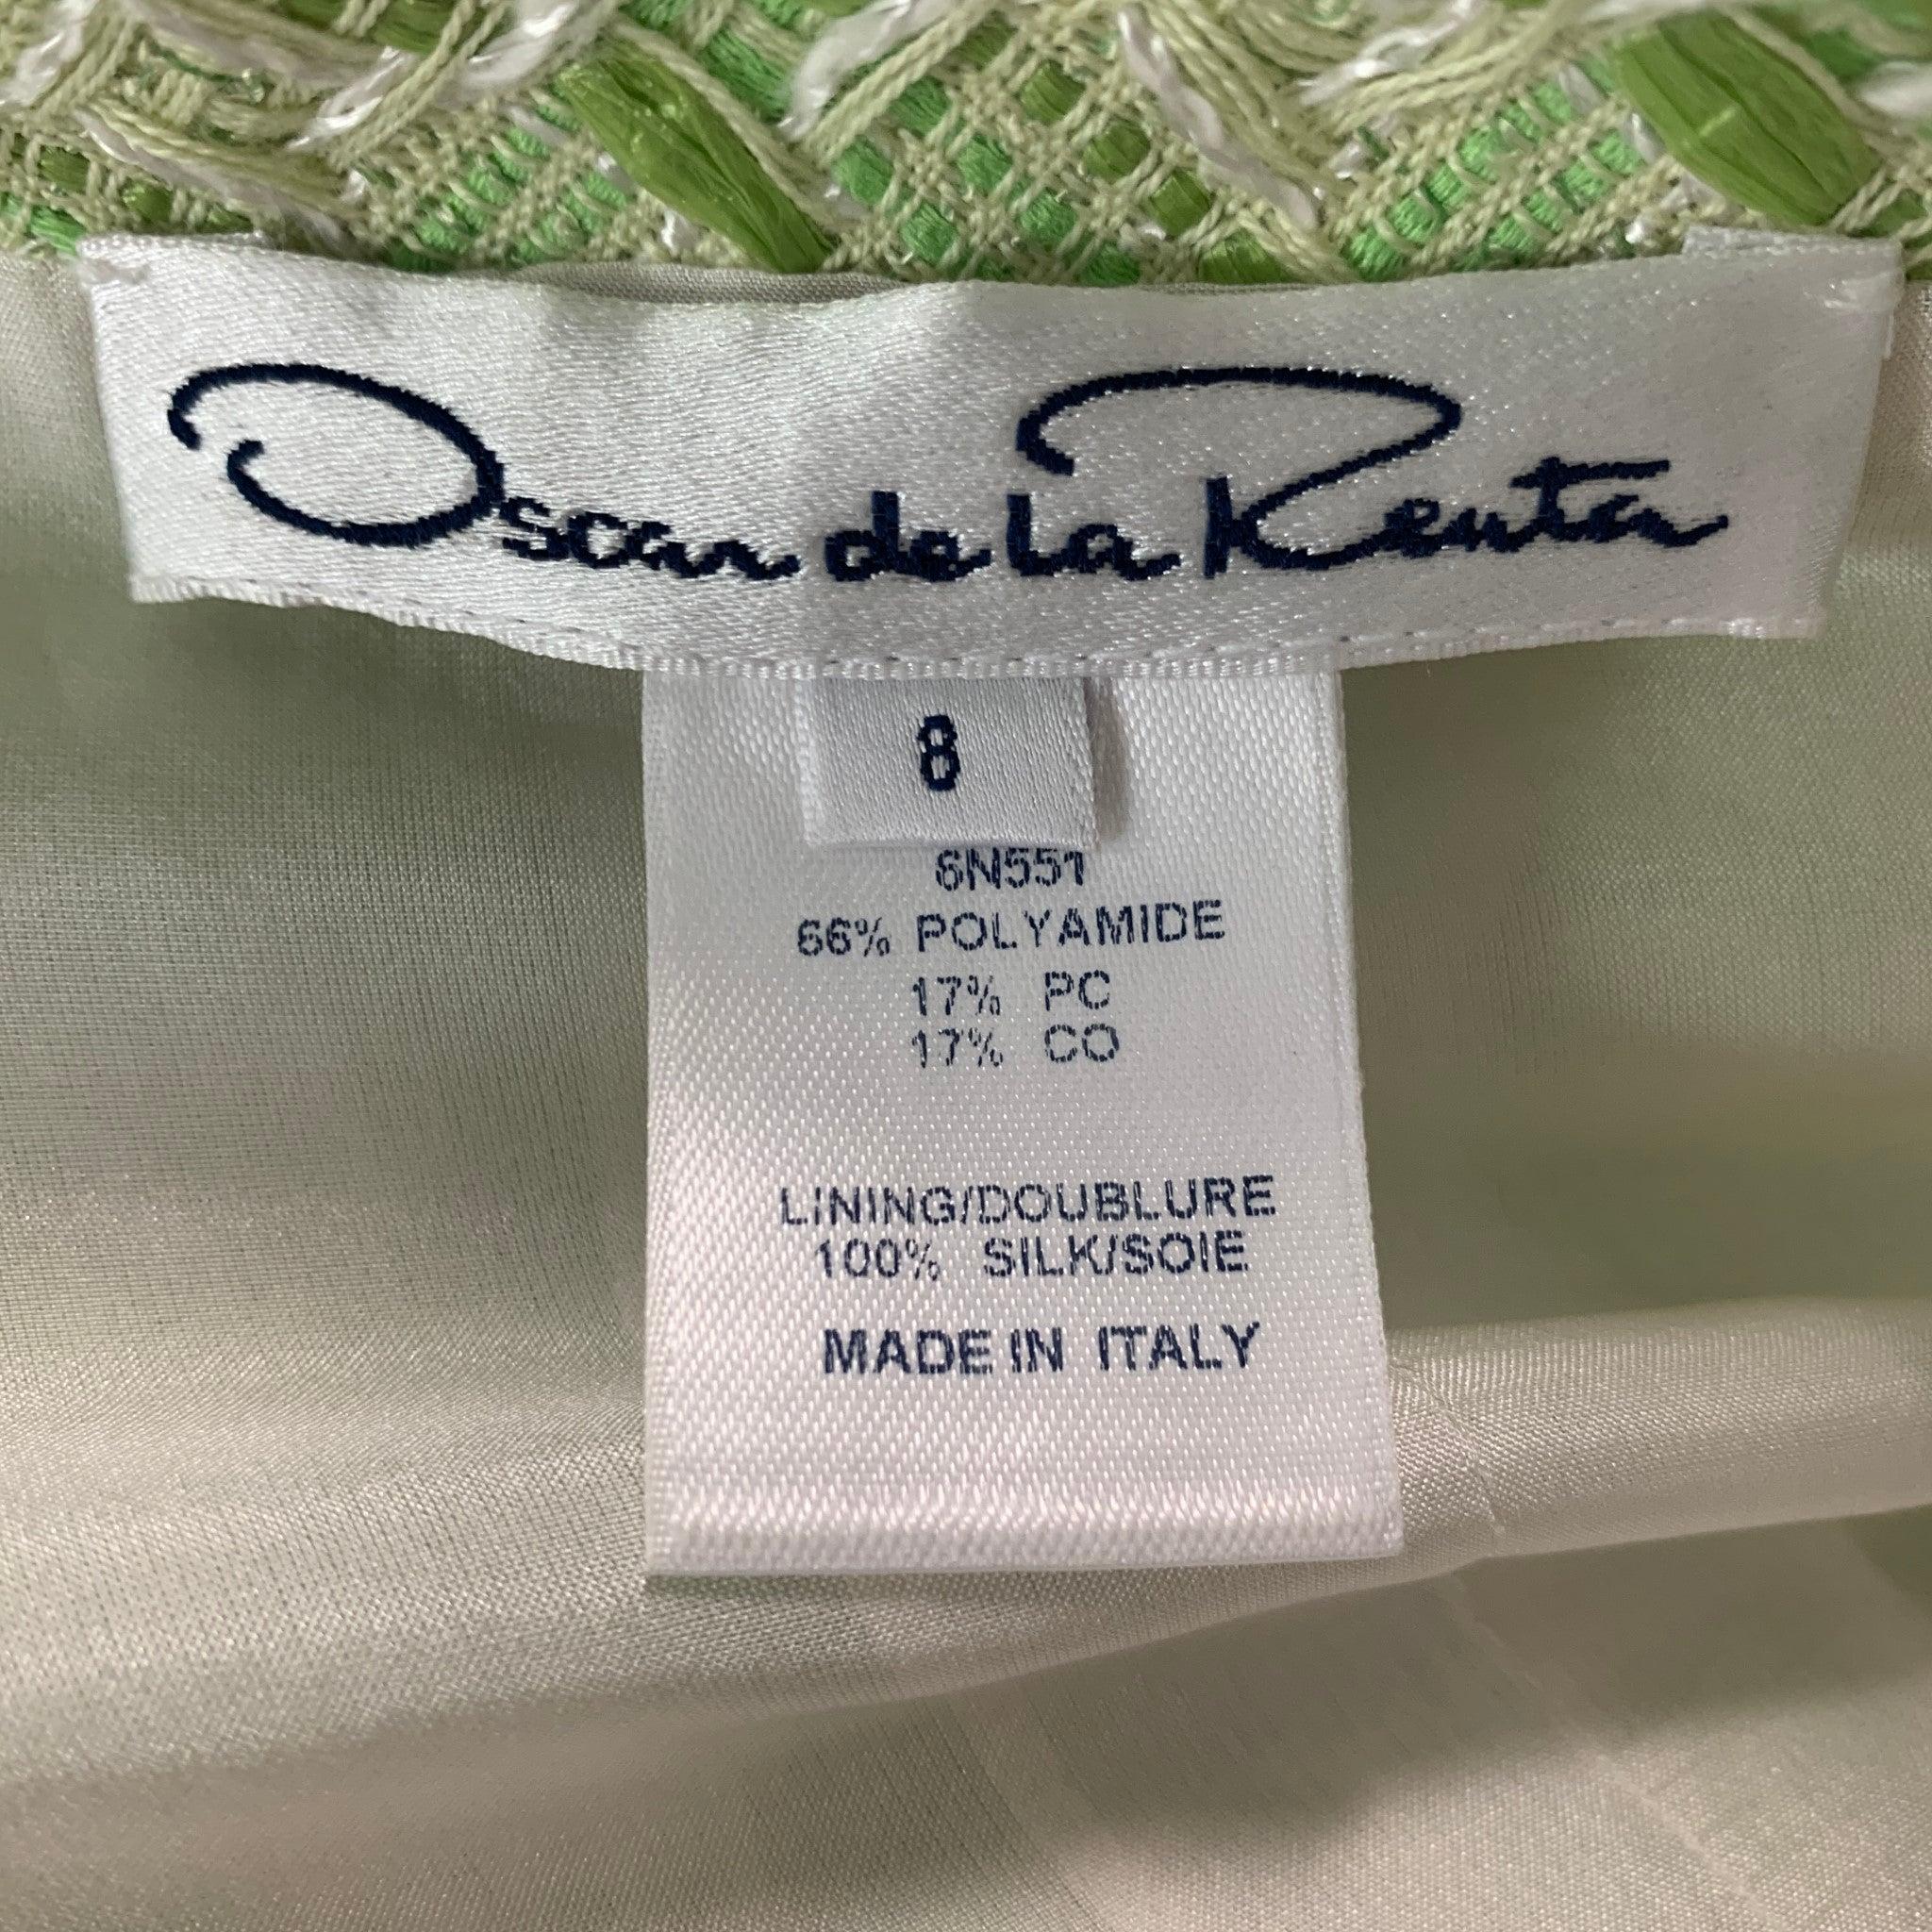 OSCAR DE LA RENTA Size 8 Green White Polyamide Blend Woven Dress Top For Sale 1